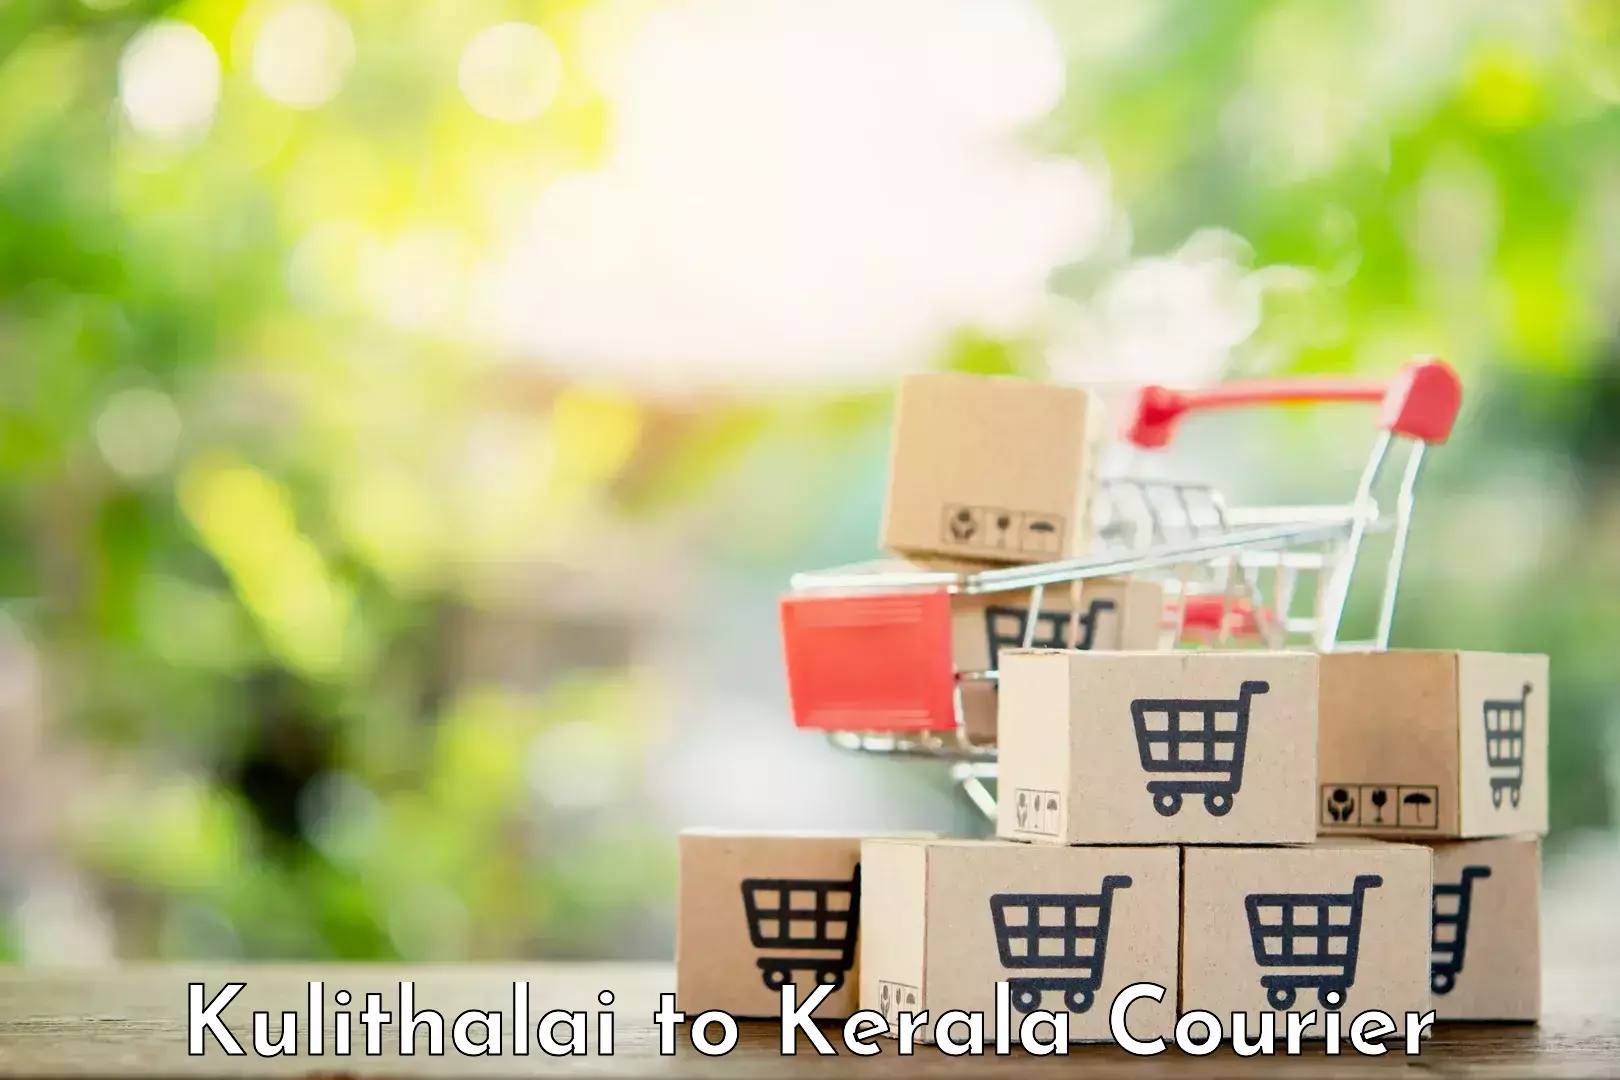 Sustainable courier practices Kulithalai to Mundakayam